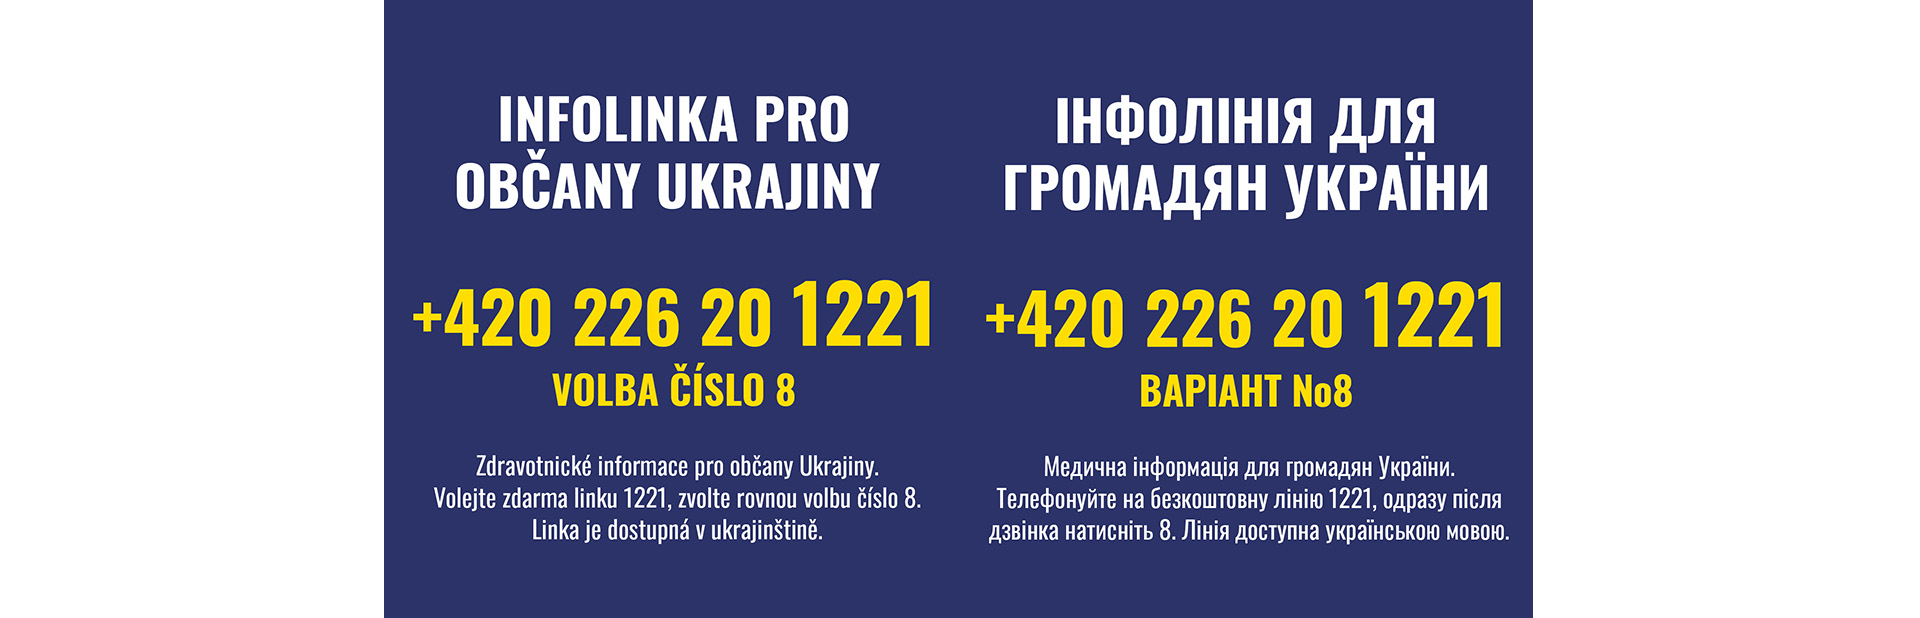 Infolinka pro občany Ukrajiny